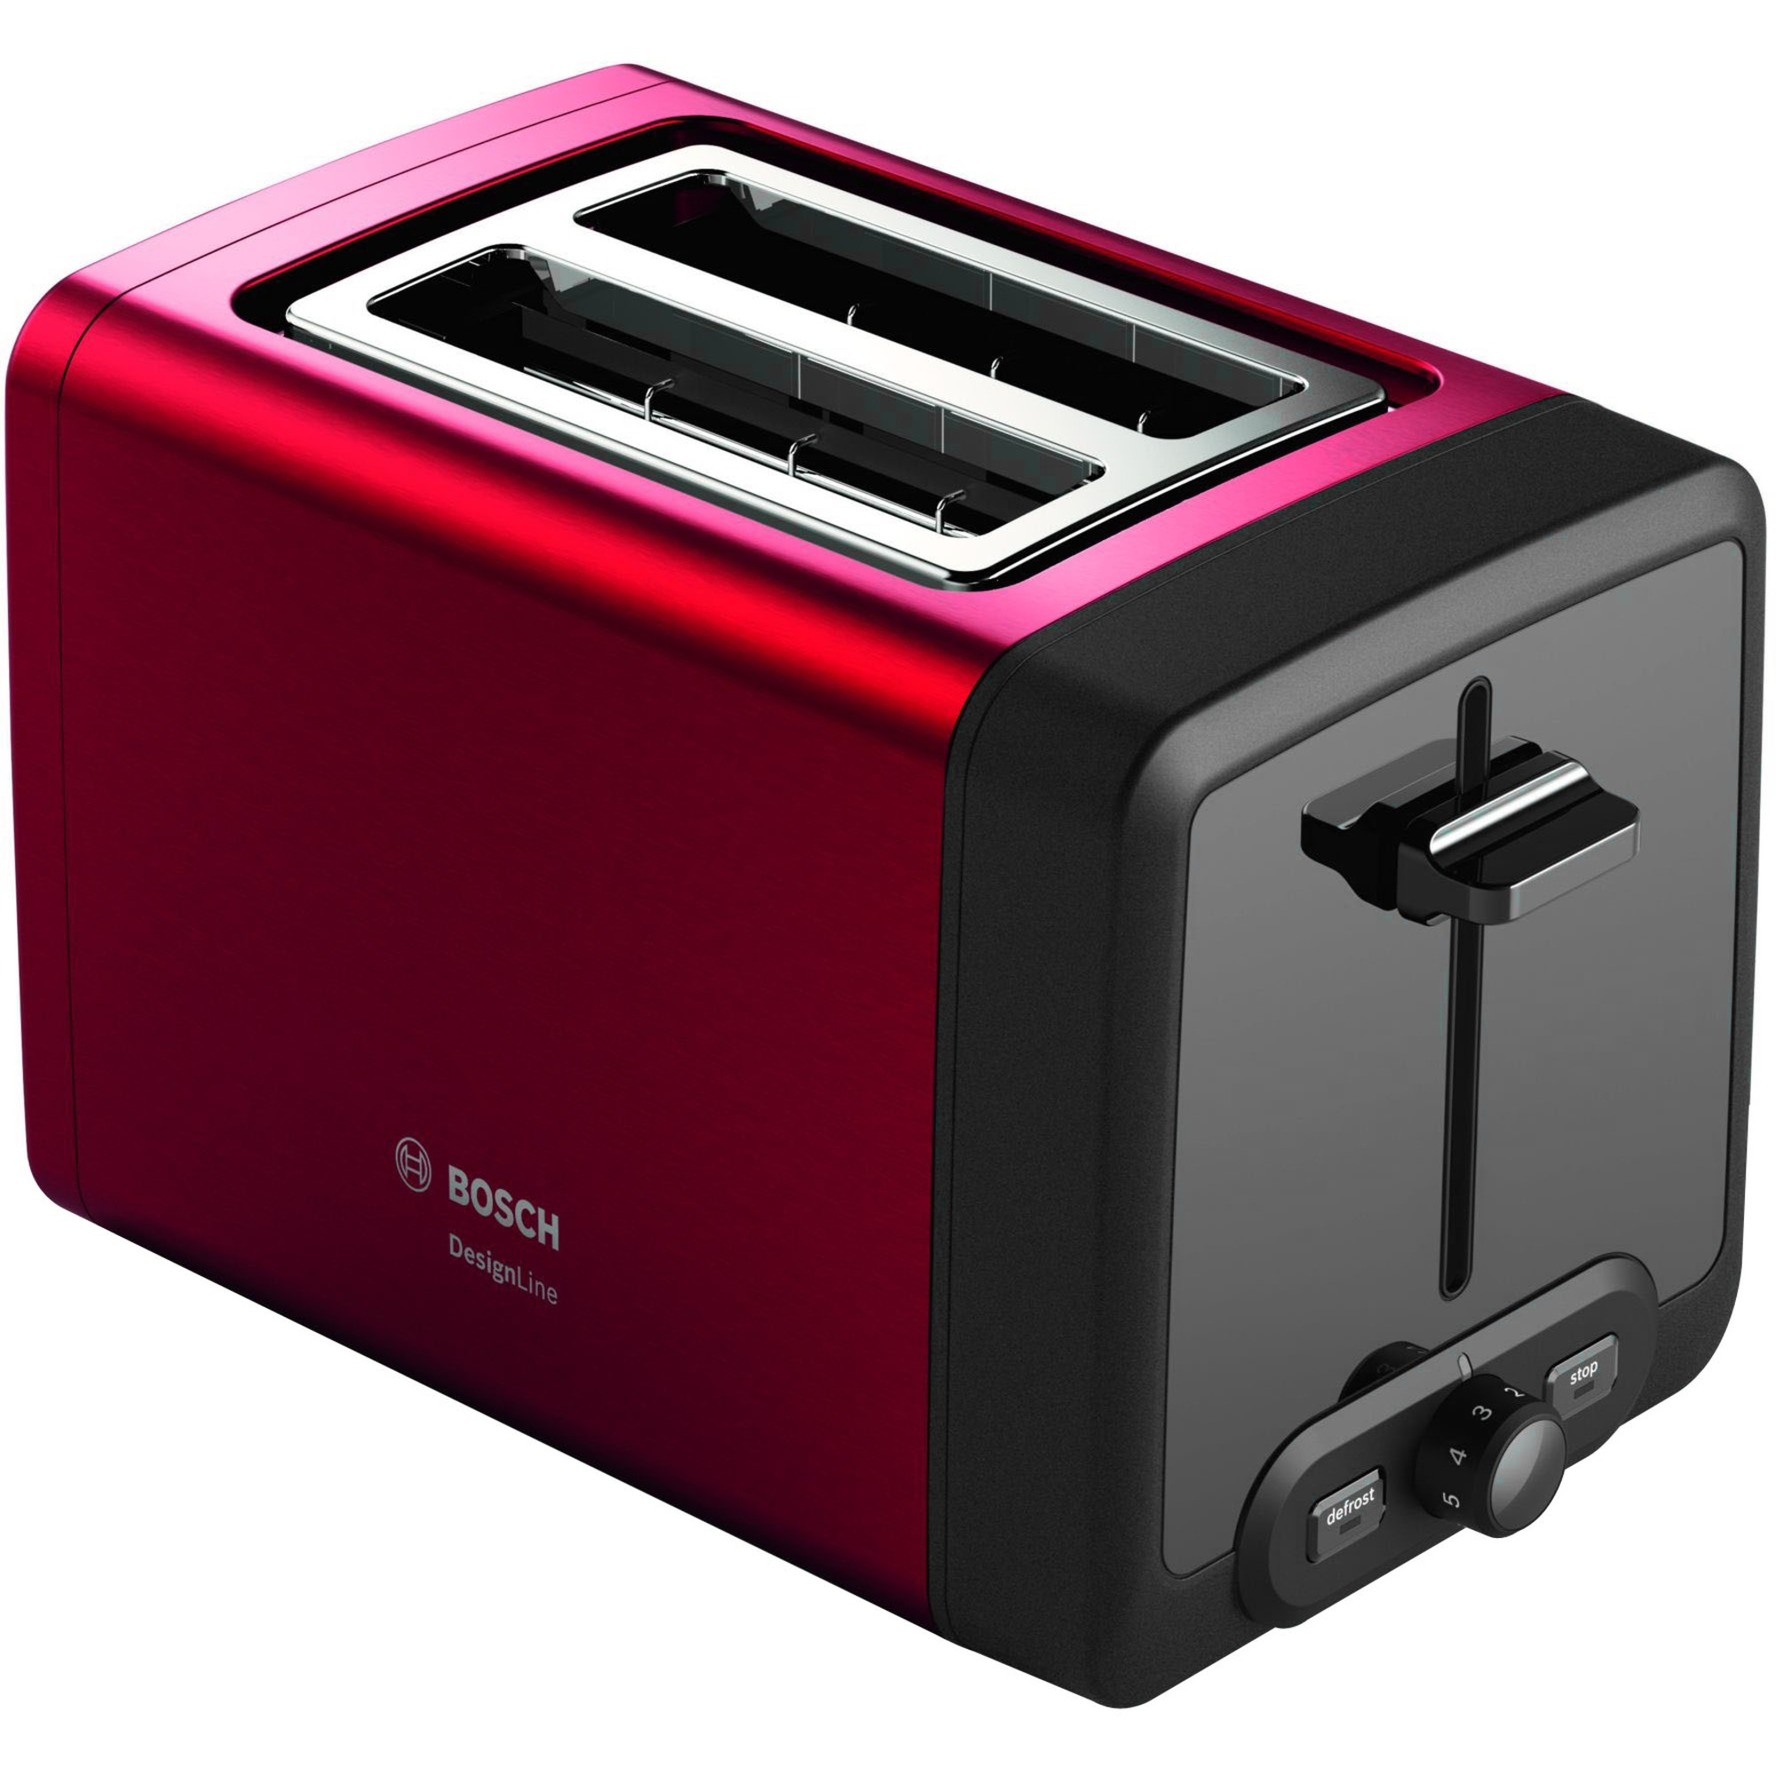 Image of Alternate - Kompakt-Toaster DesignLine TAT4P424DE online einkaufen bei Alternate